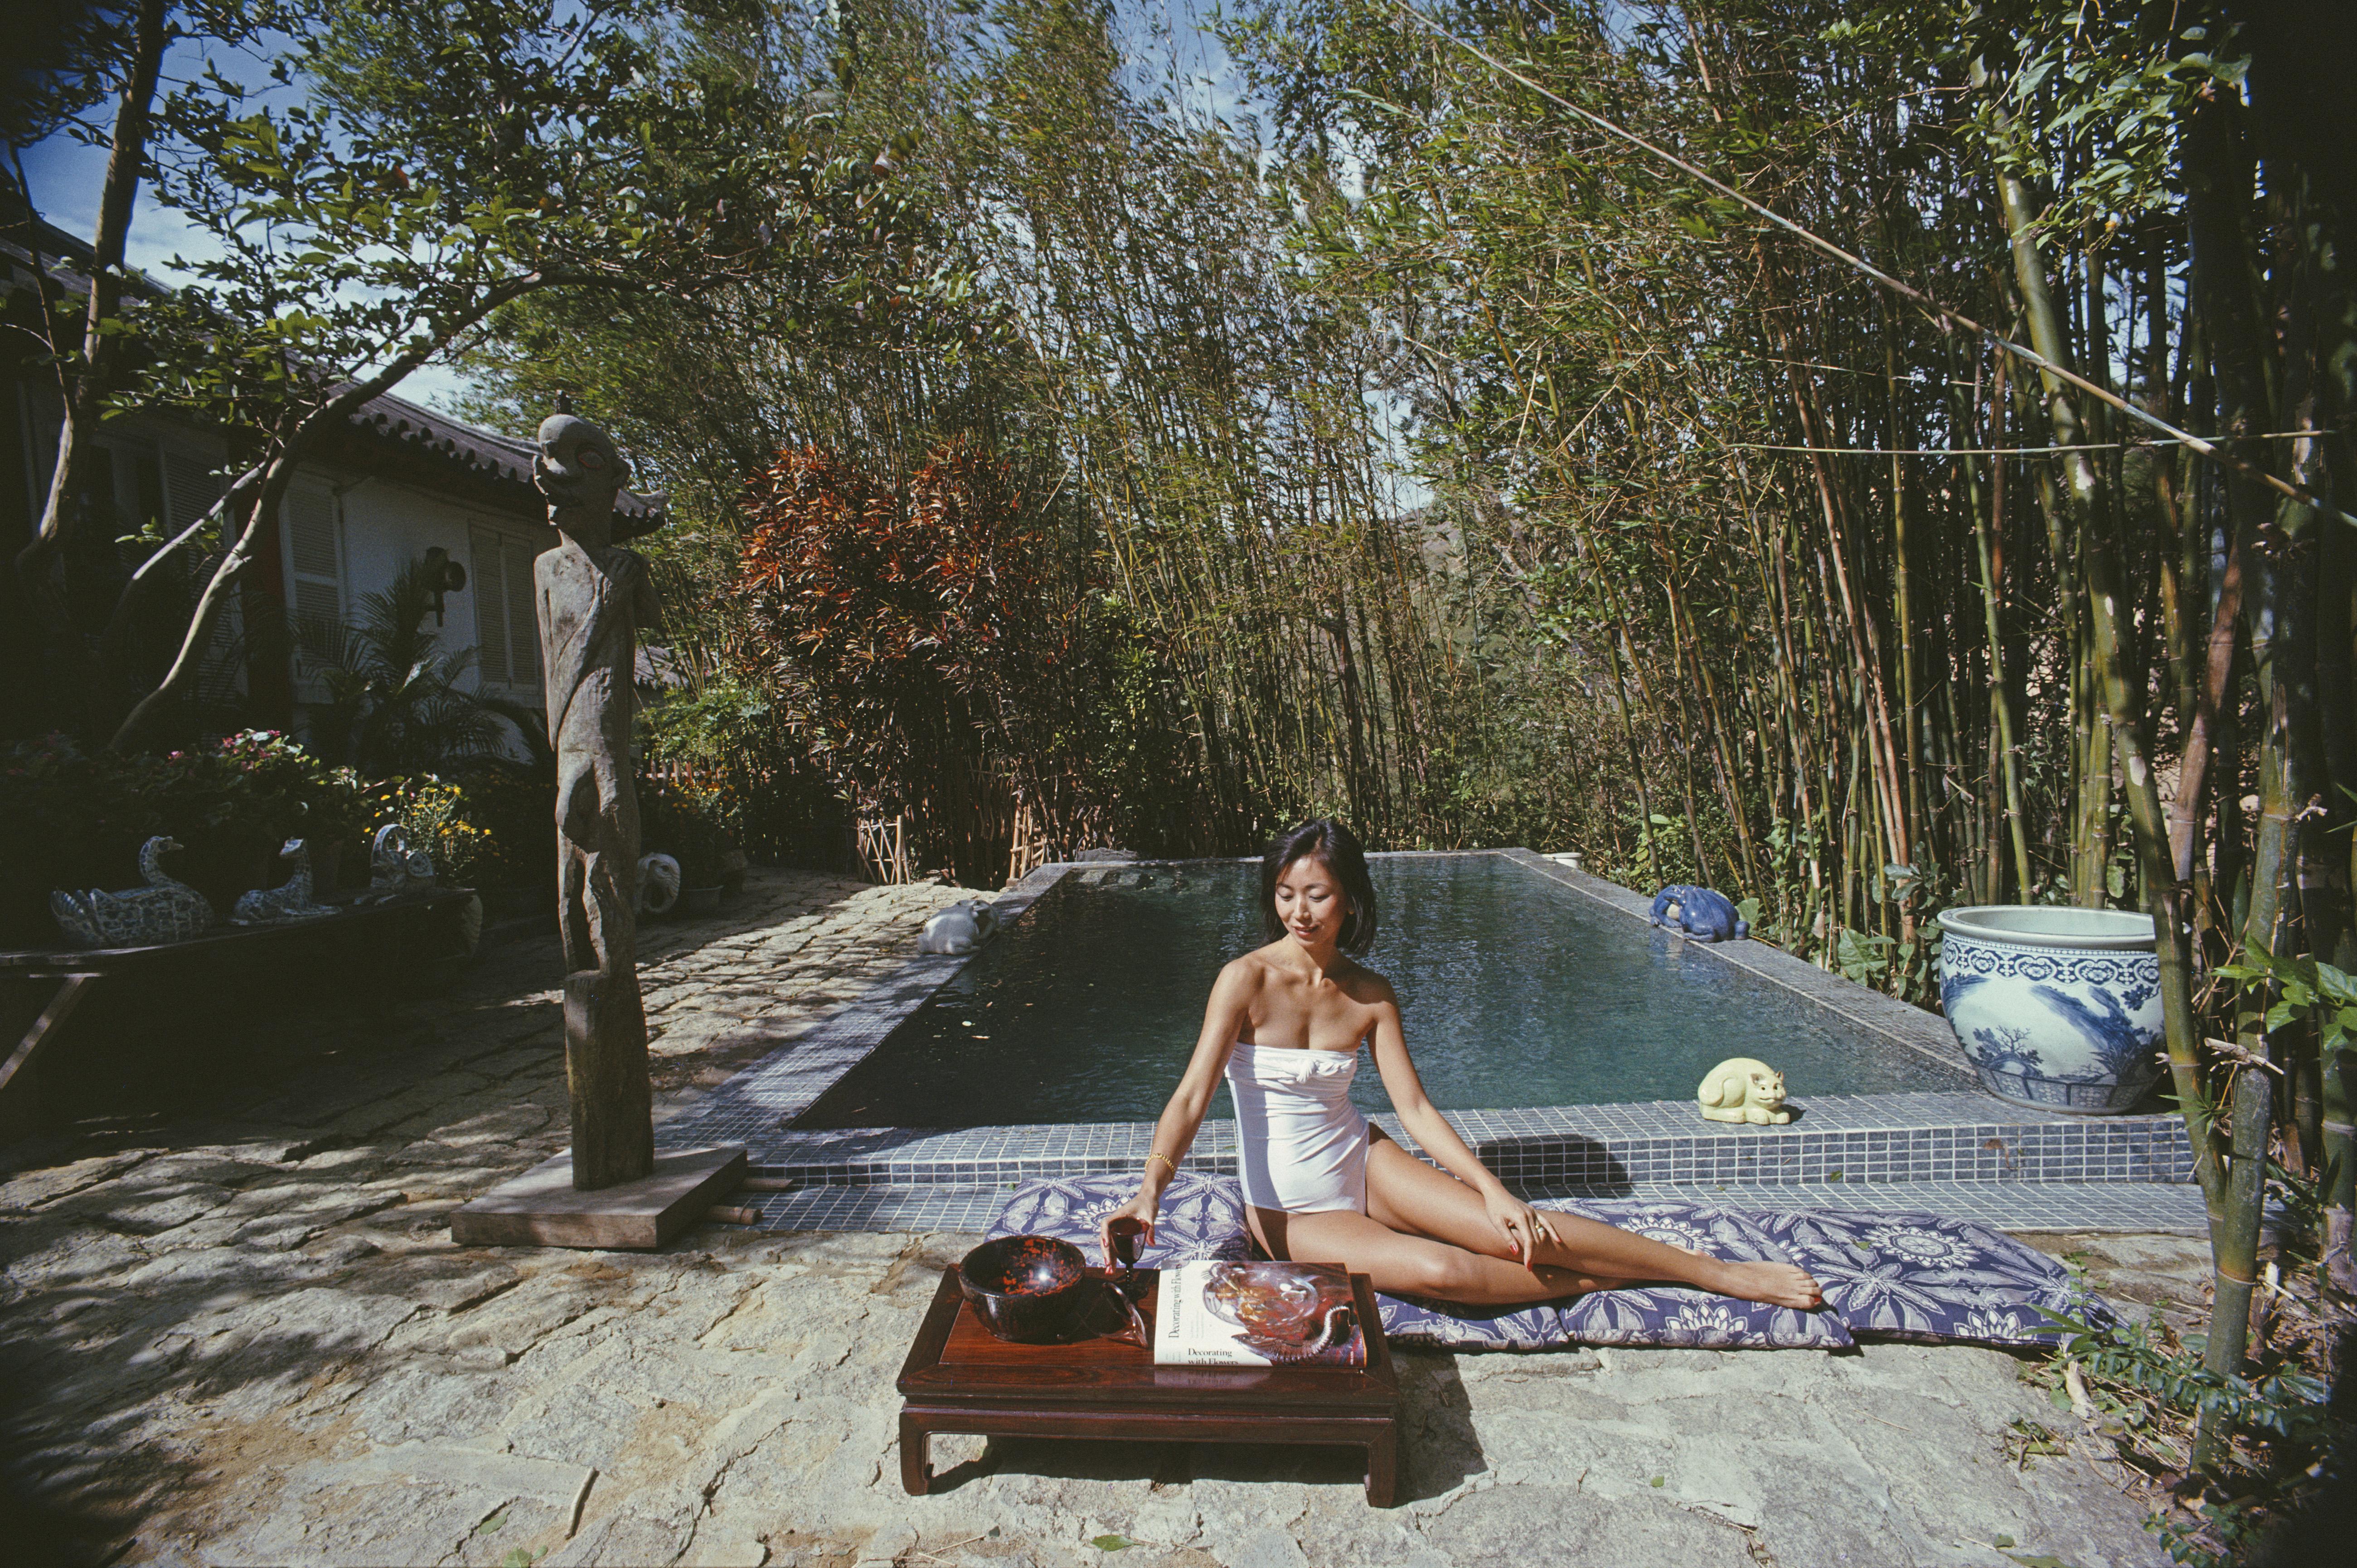 cecily Godfrey' 1979 Slim Aarons Limitierte Nachlassausgabe Druck 

Cecily Godfrey entspannt sich am Pool in ihrem Haus in Hongkong, 1979. Ihr Ehemann Gerald ist Vizepräsident des Berufungsgerichts in Hongkong. 

Hergestellt aus der